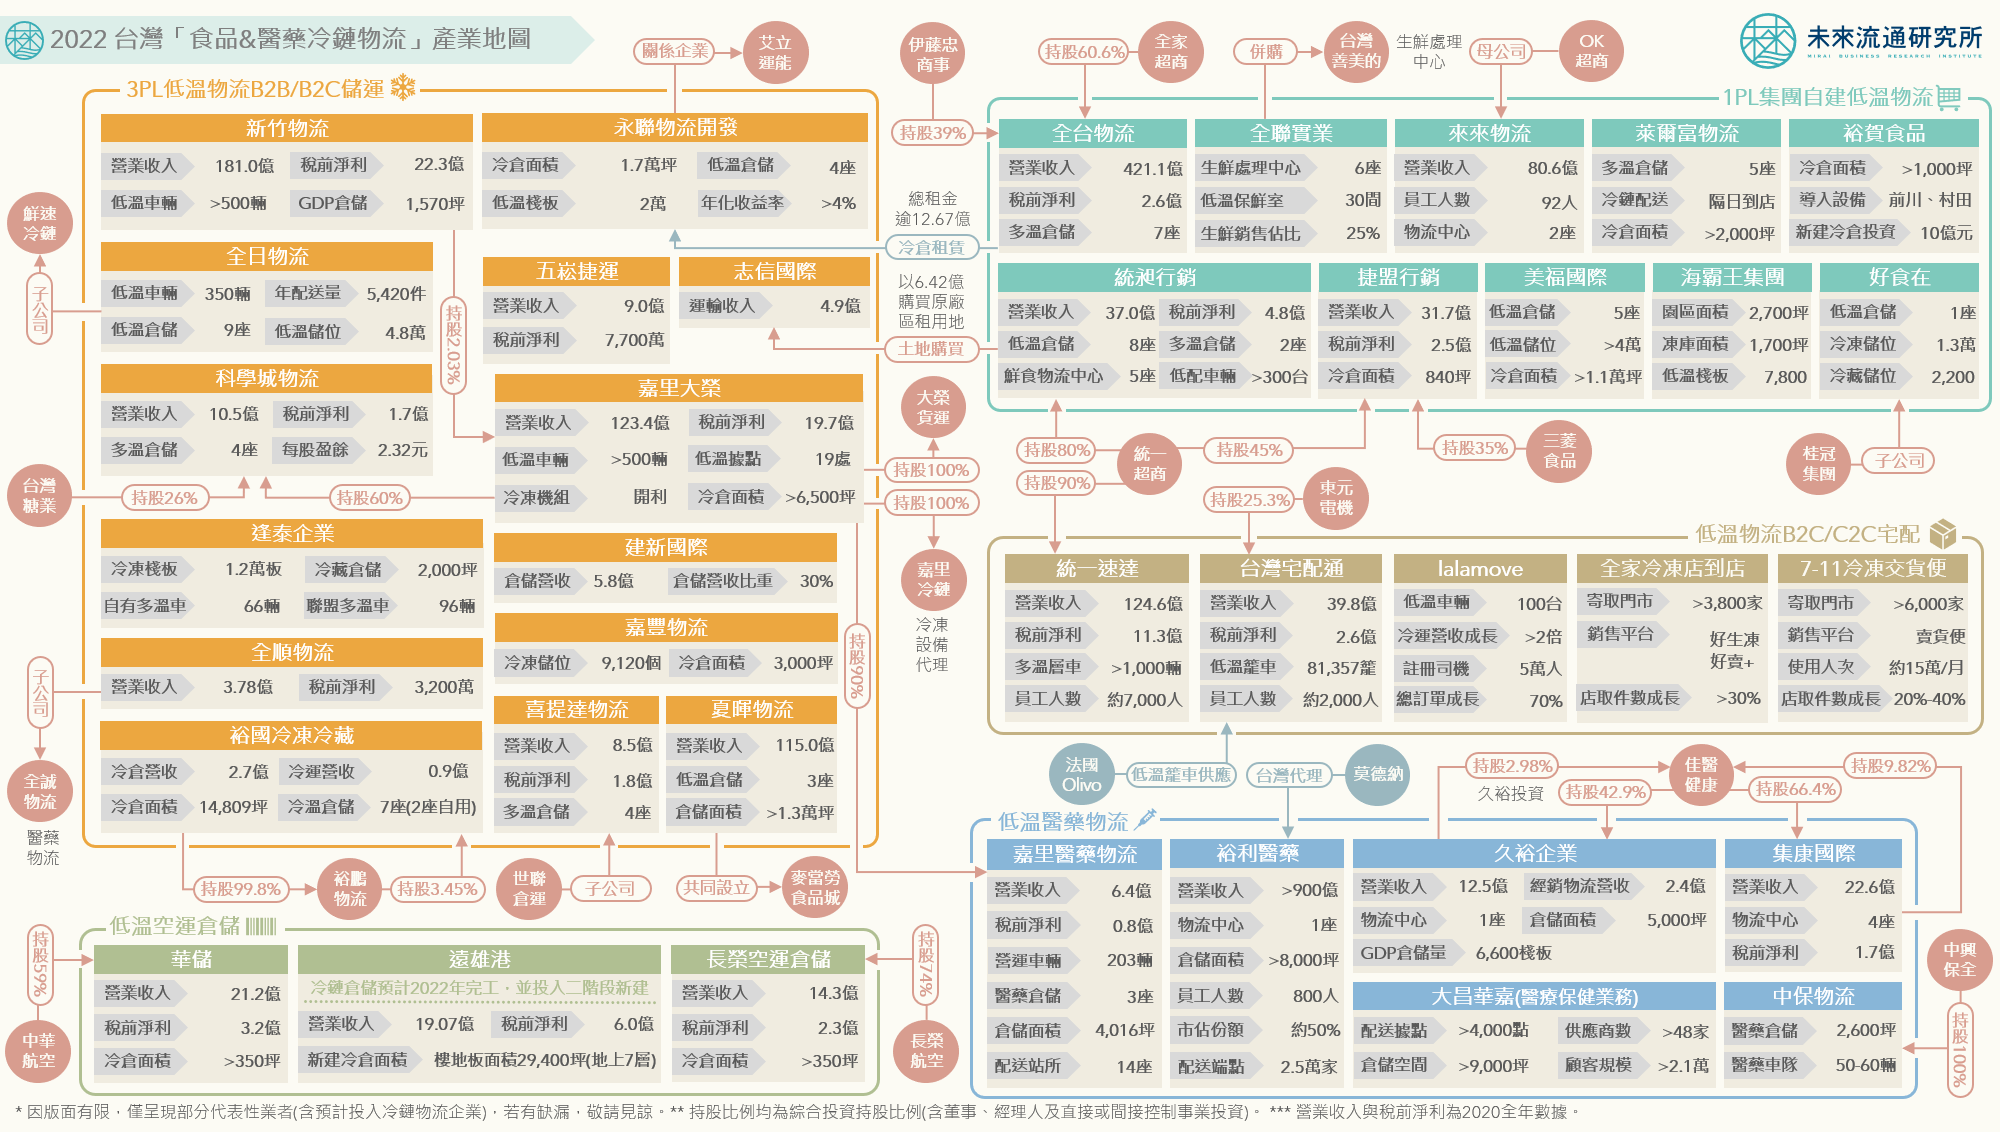 2022 台灣「食品&醫藥冷鏈物流」產業地圖。